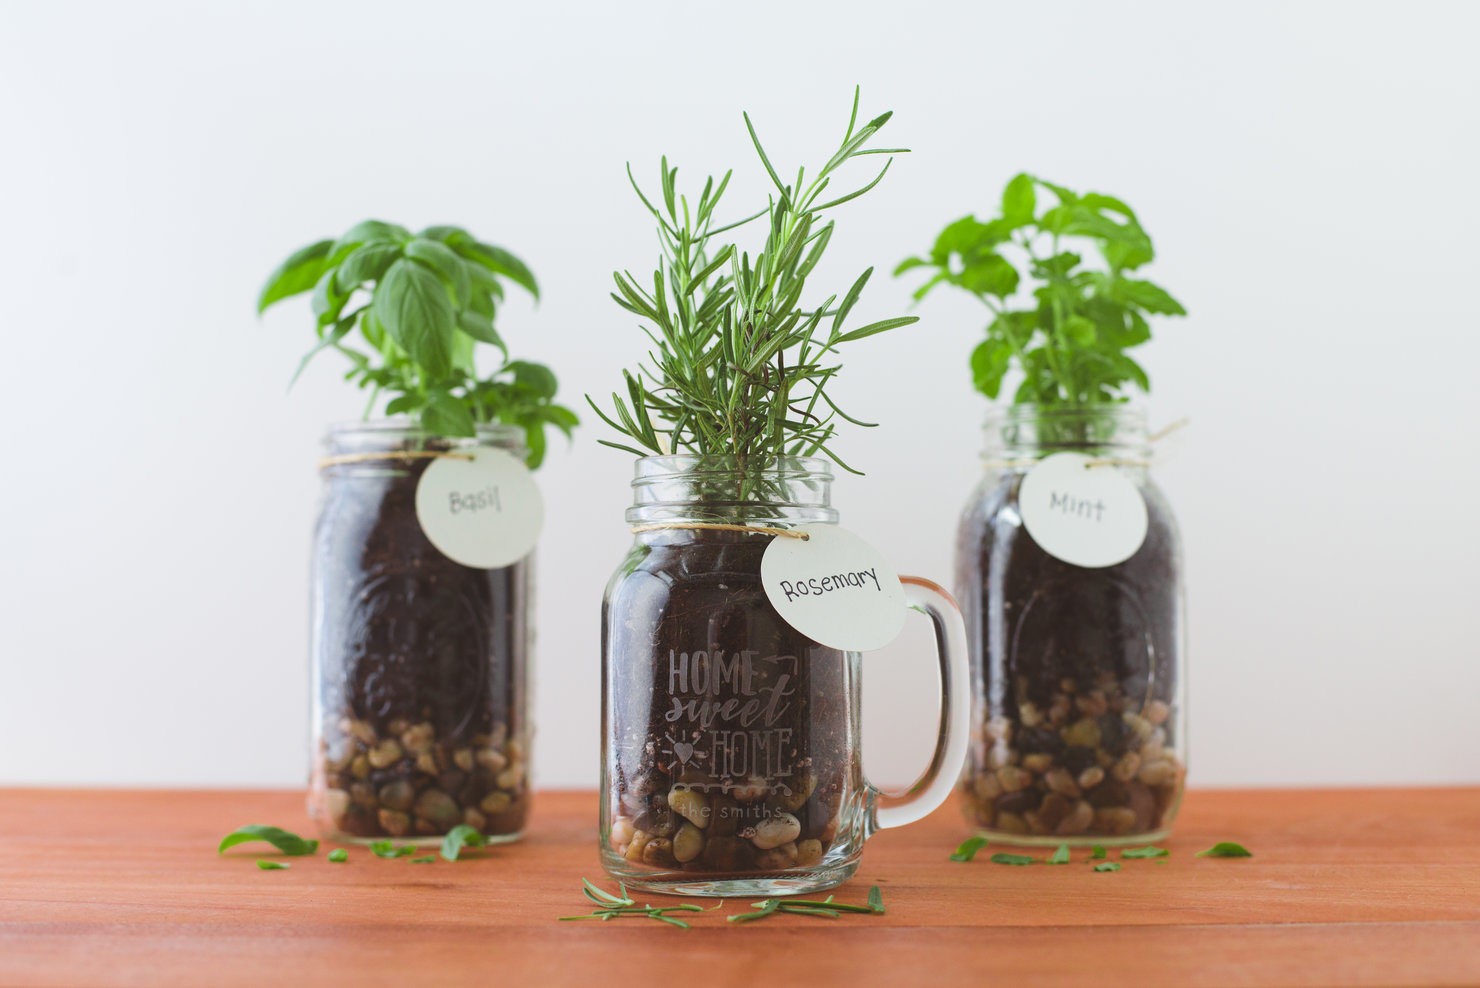 Make your kitchen windowsill an herb garden